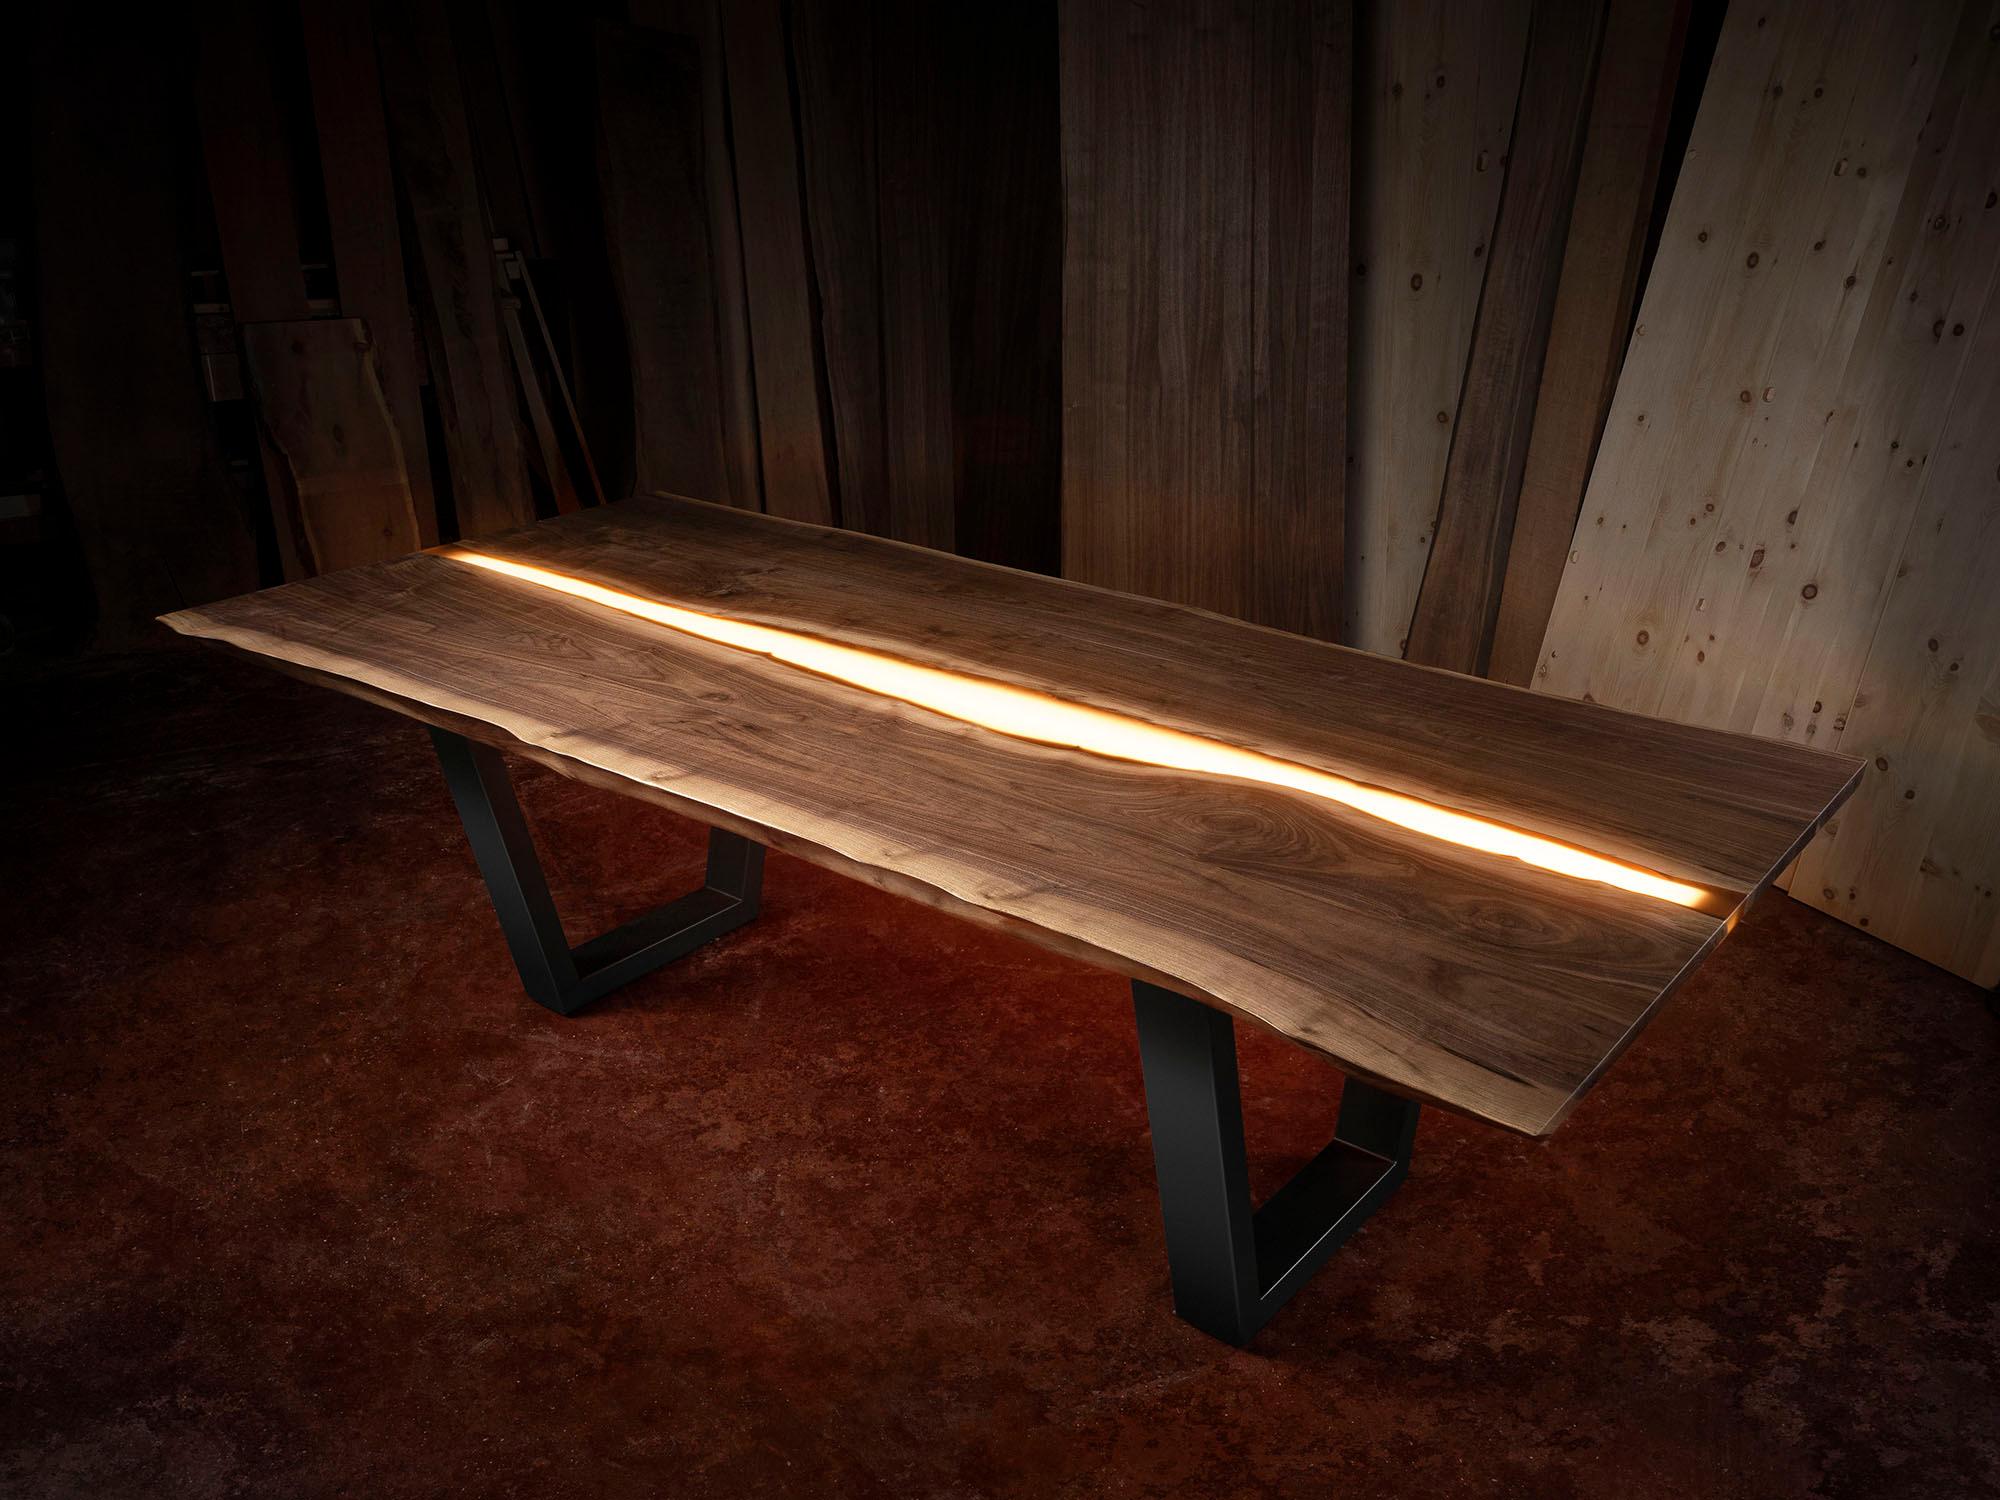 A Day In The Life Tisch von Francesco Profili
Abmessungen: B 250 x T 125 x H 79 cm 
MATERIALIEN: Walnuss, Eisen, Messing, farbiges Epoxidharz, LED.

Es ist die Synthese zwischen Qualität und Schönheit der Materialien.
Der Tisch besteht aus zwei